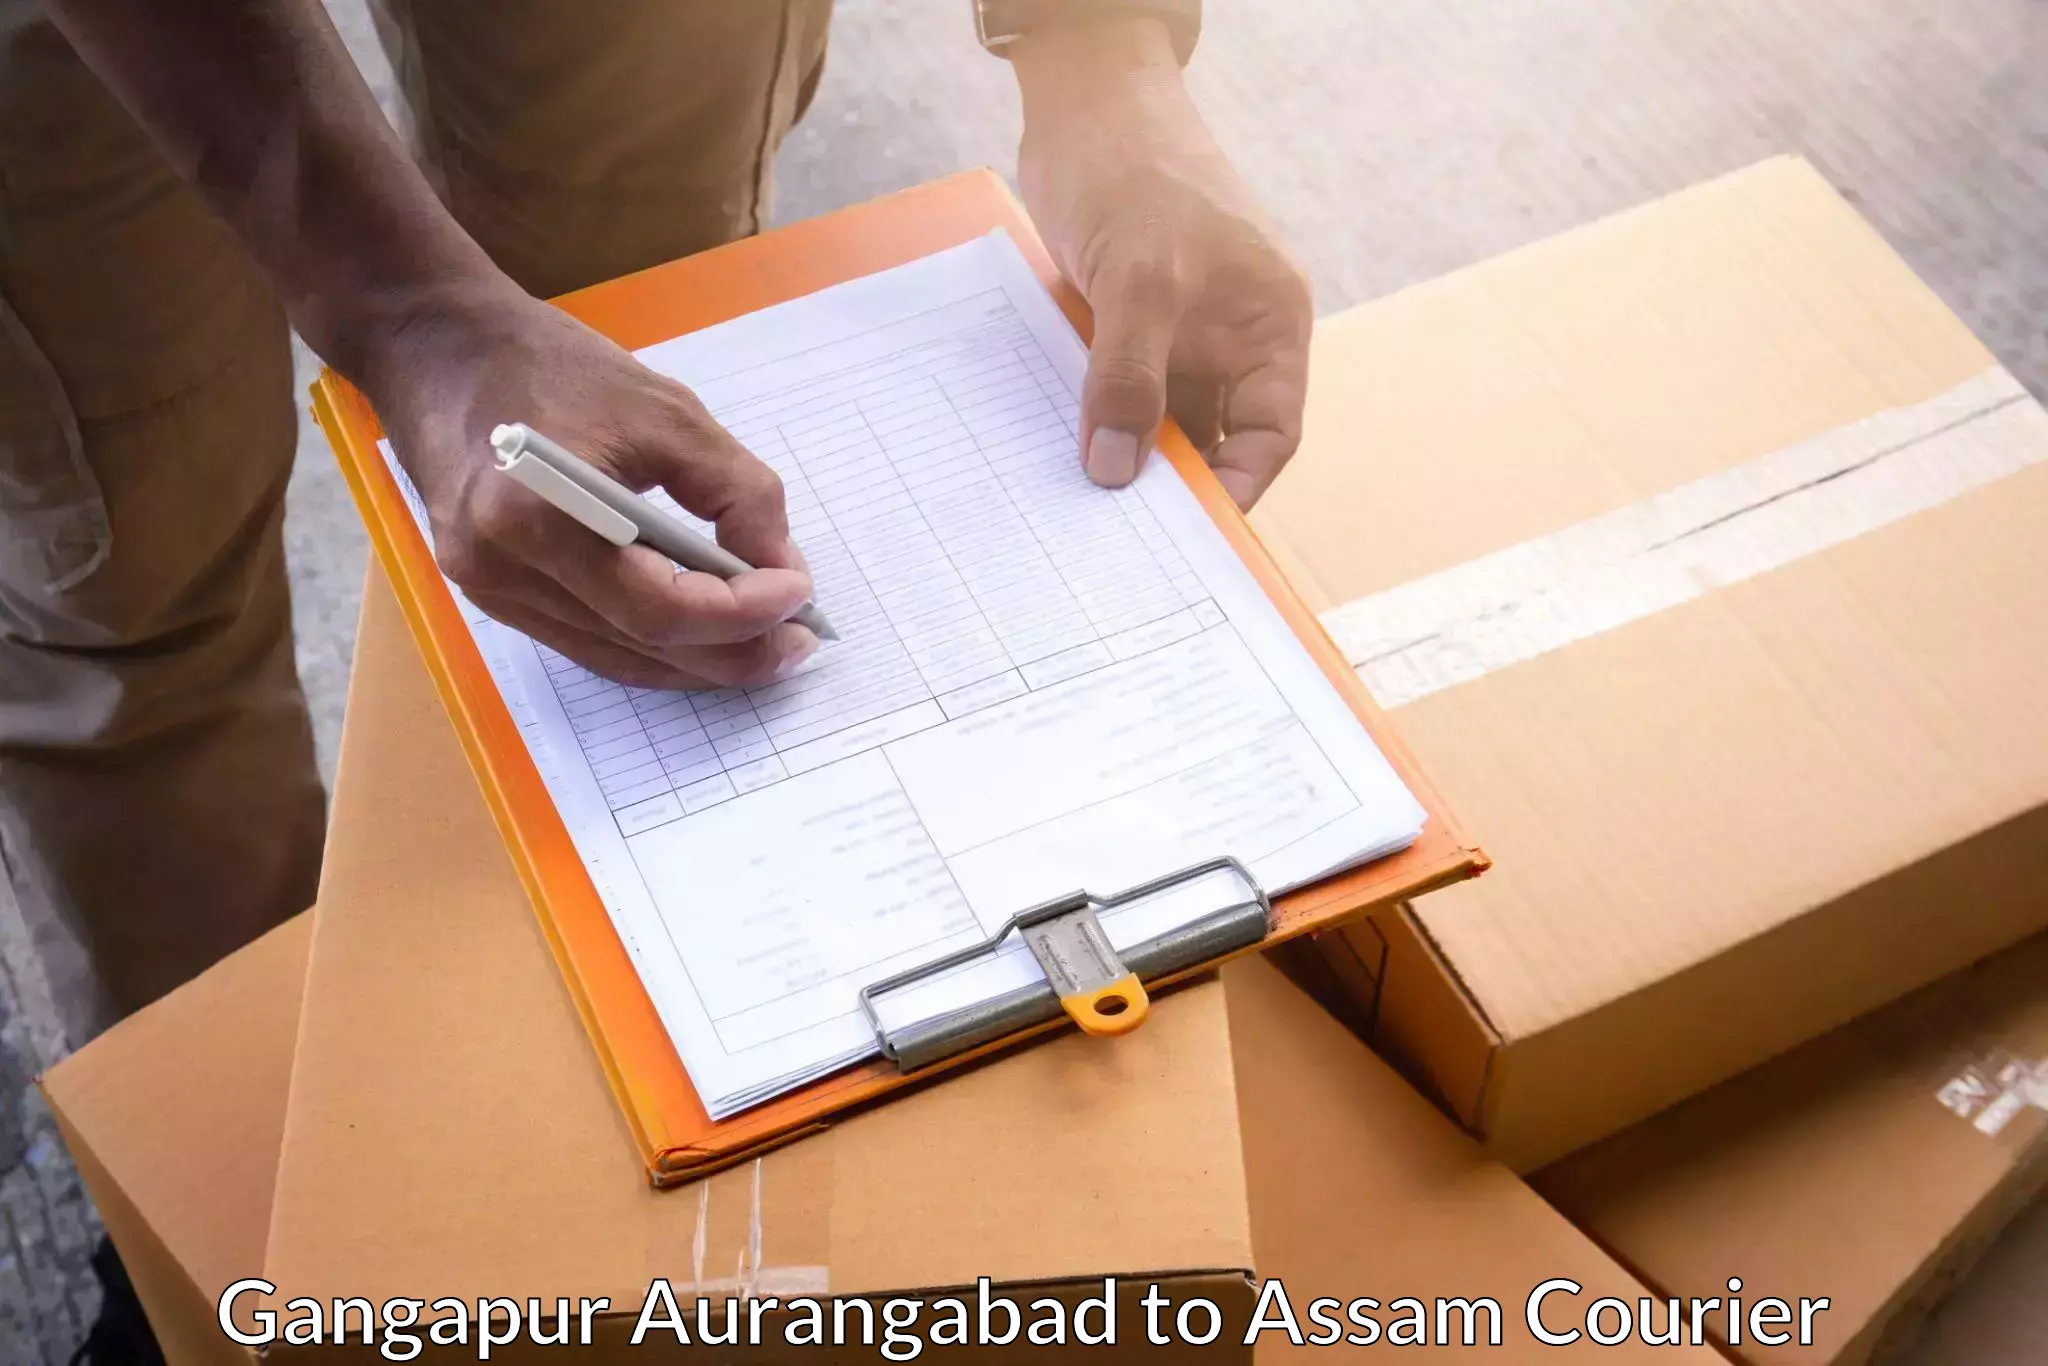 Optimized delivery routes Gangapur Aurangabad to Amoni